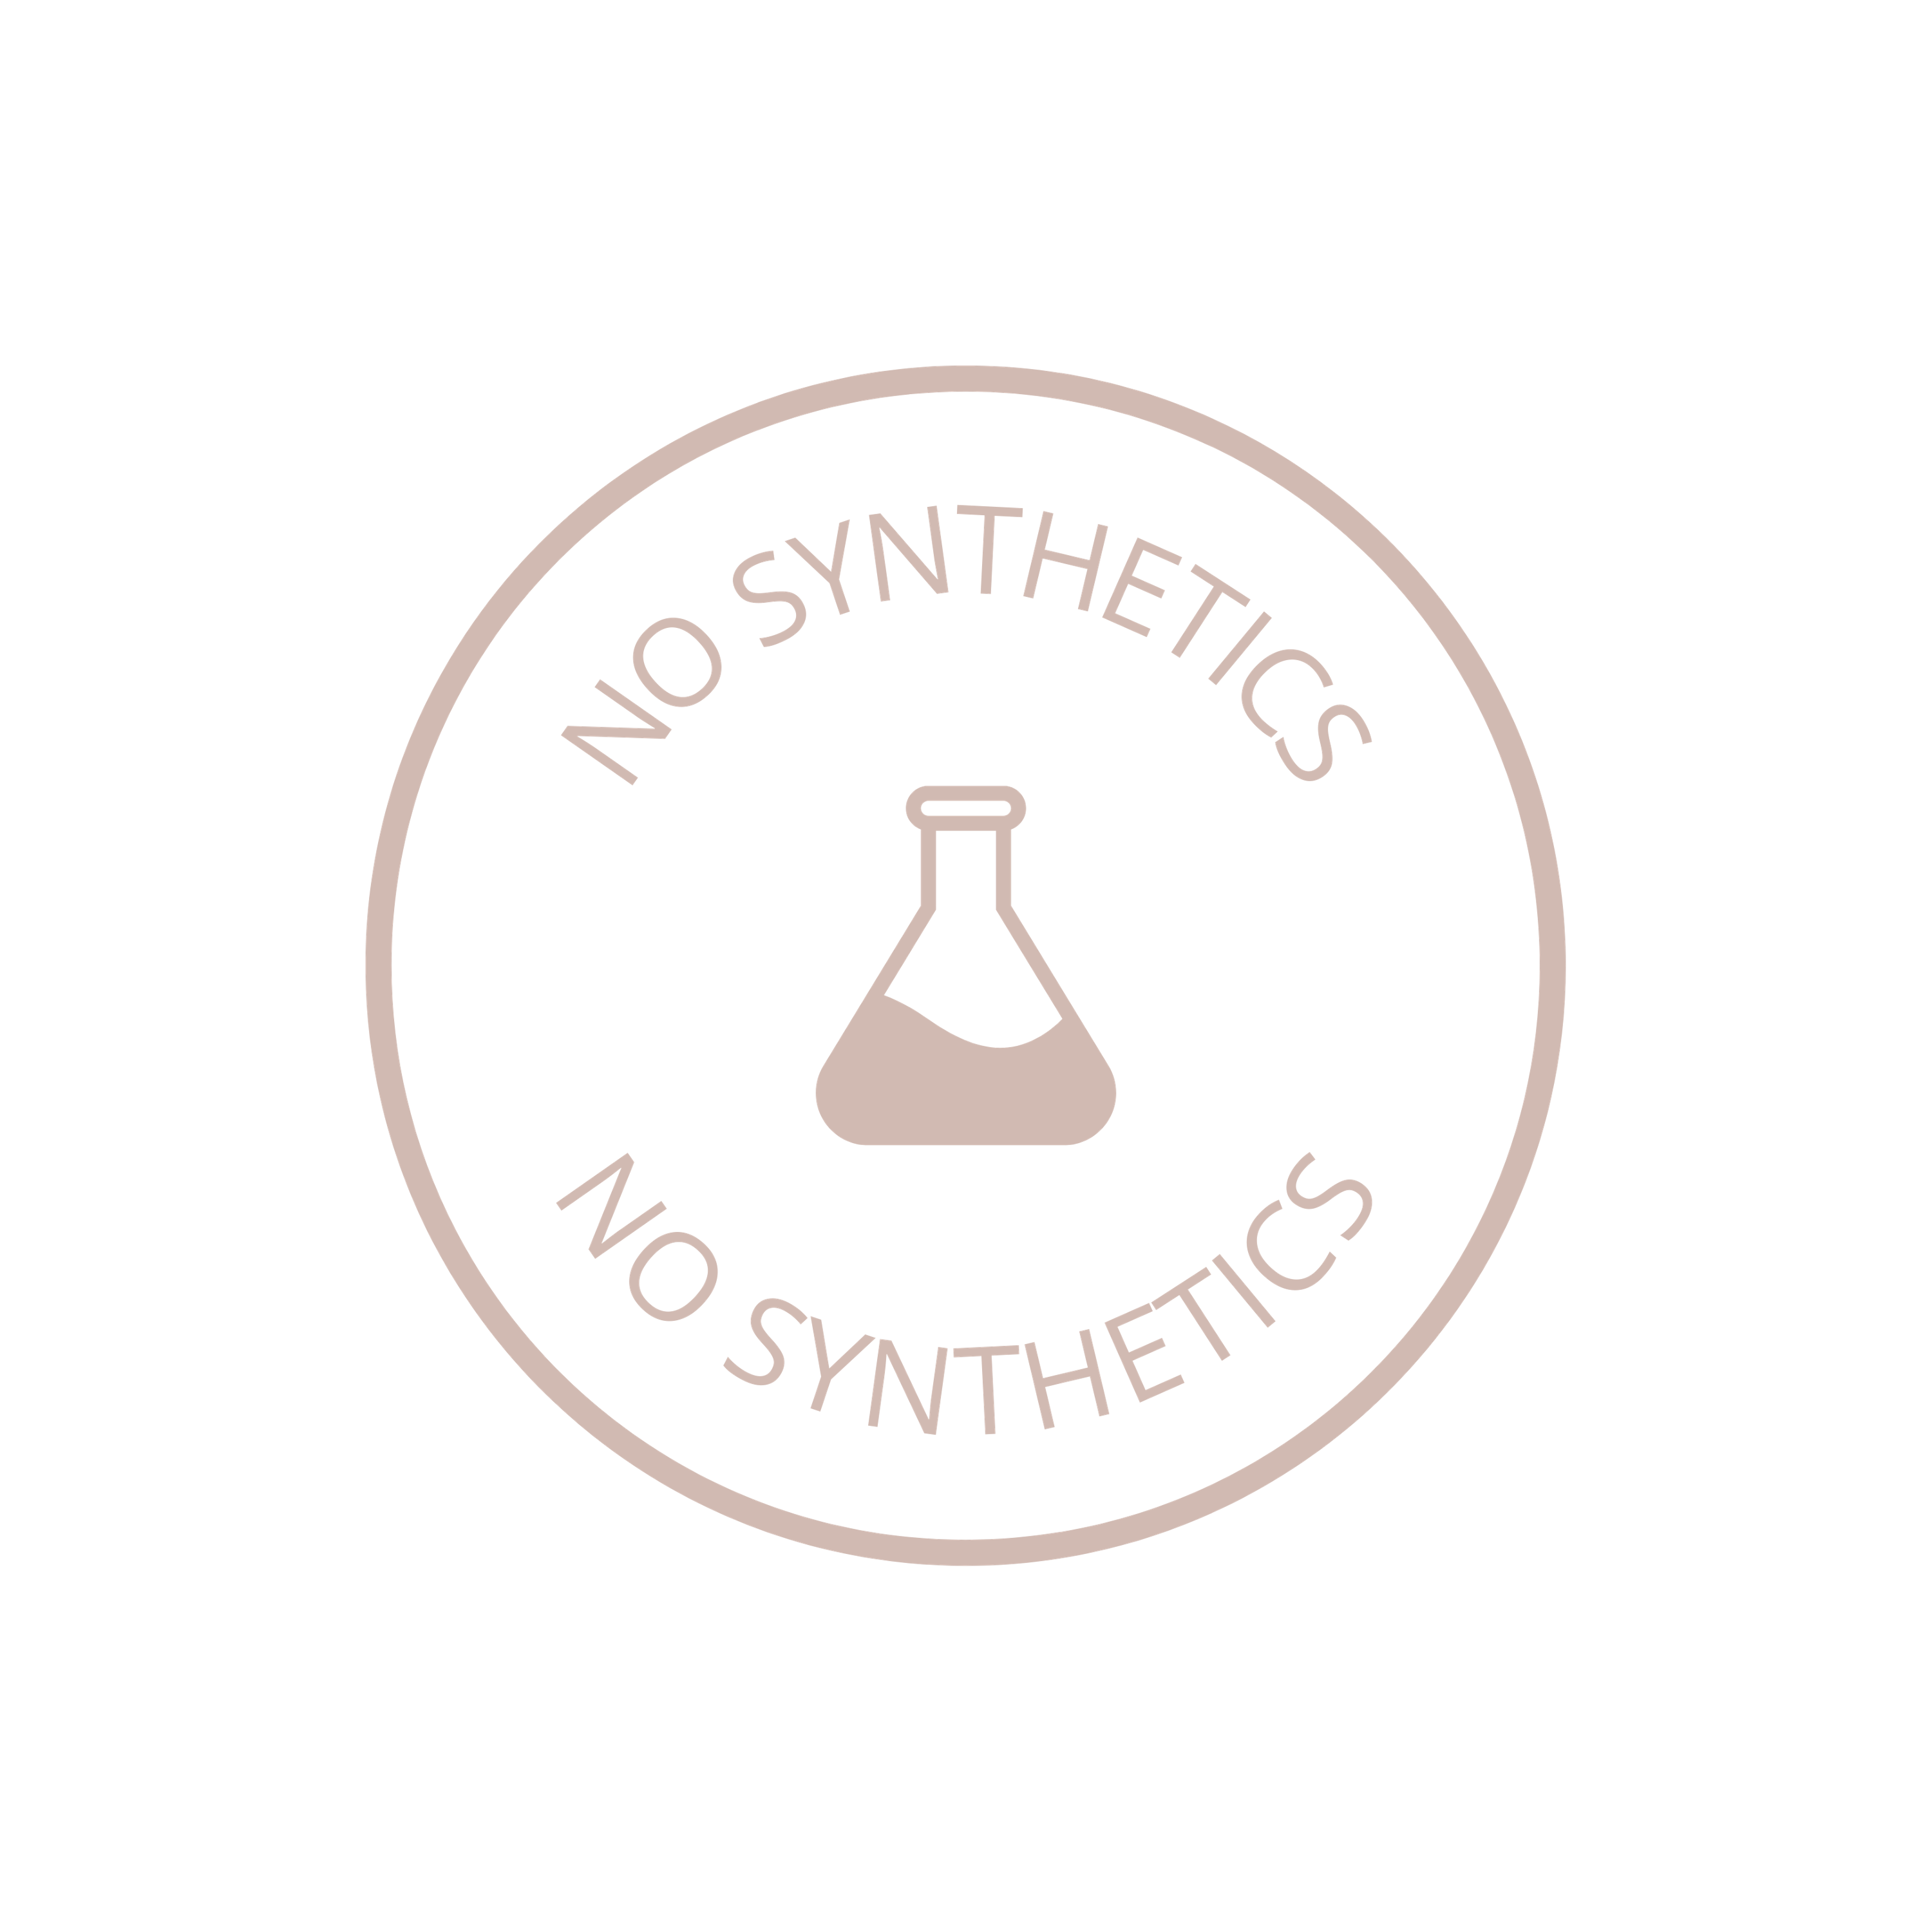 No synthetics logo